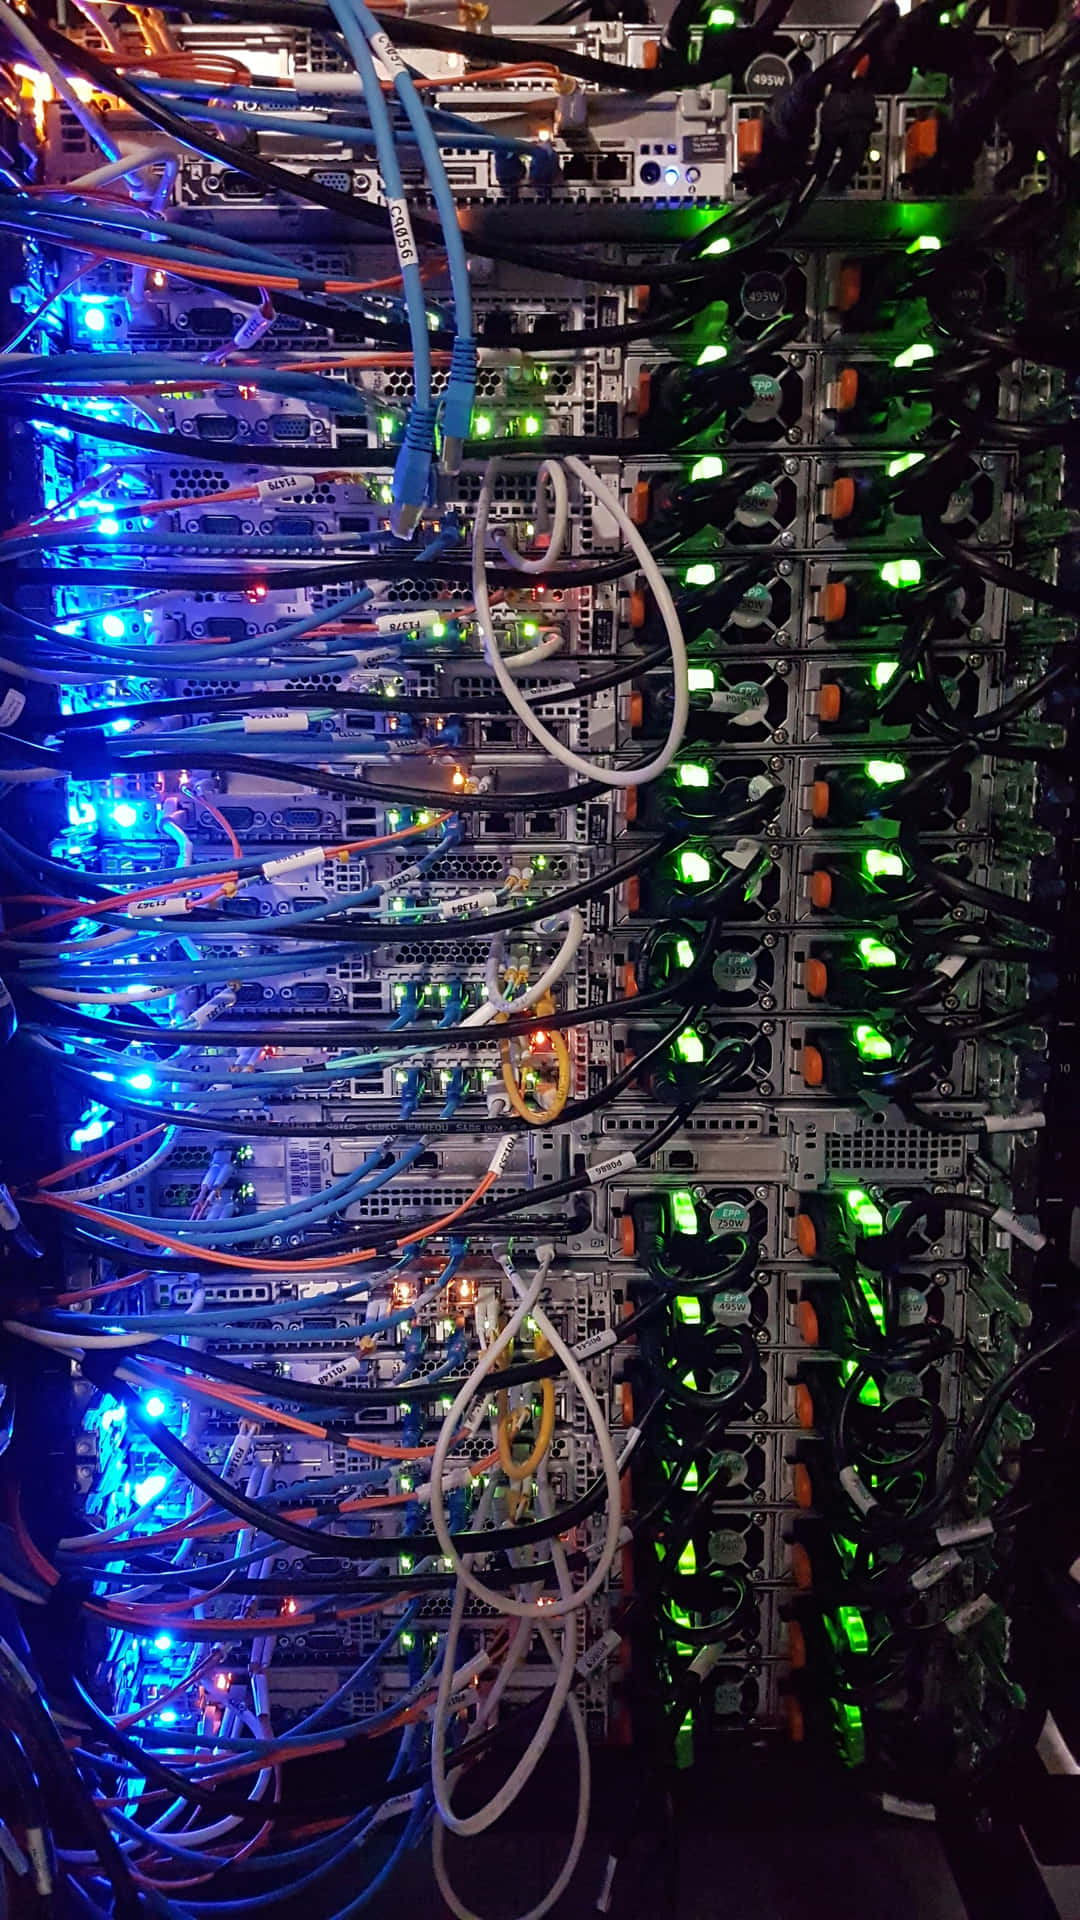 Data Center Network Cabling.jpg Wallpaper